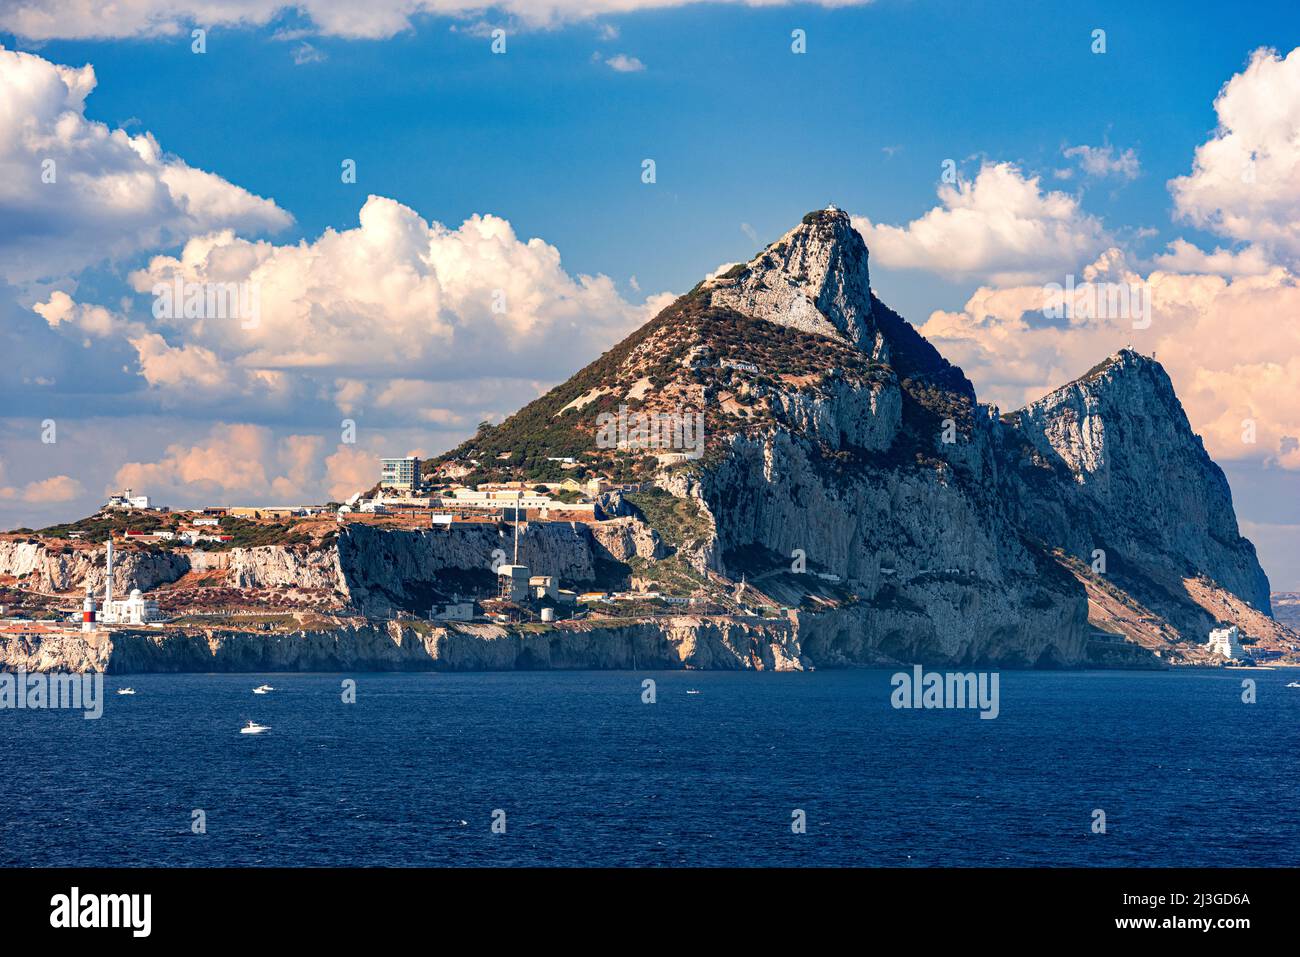 La Rocca di Gibilterra, un territorio britannico d'oltremare situato all'estremità meridionale della penisola iberica. Foto Stock